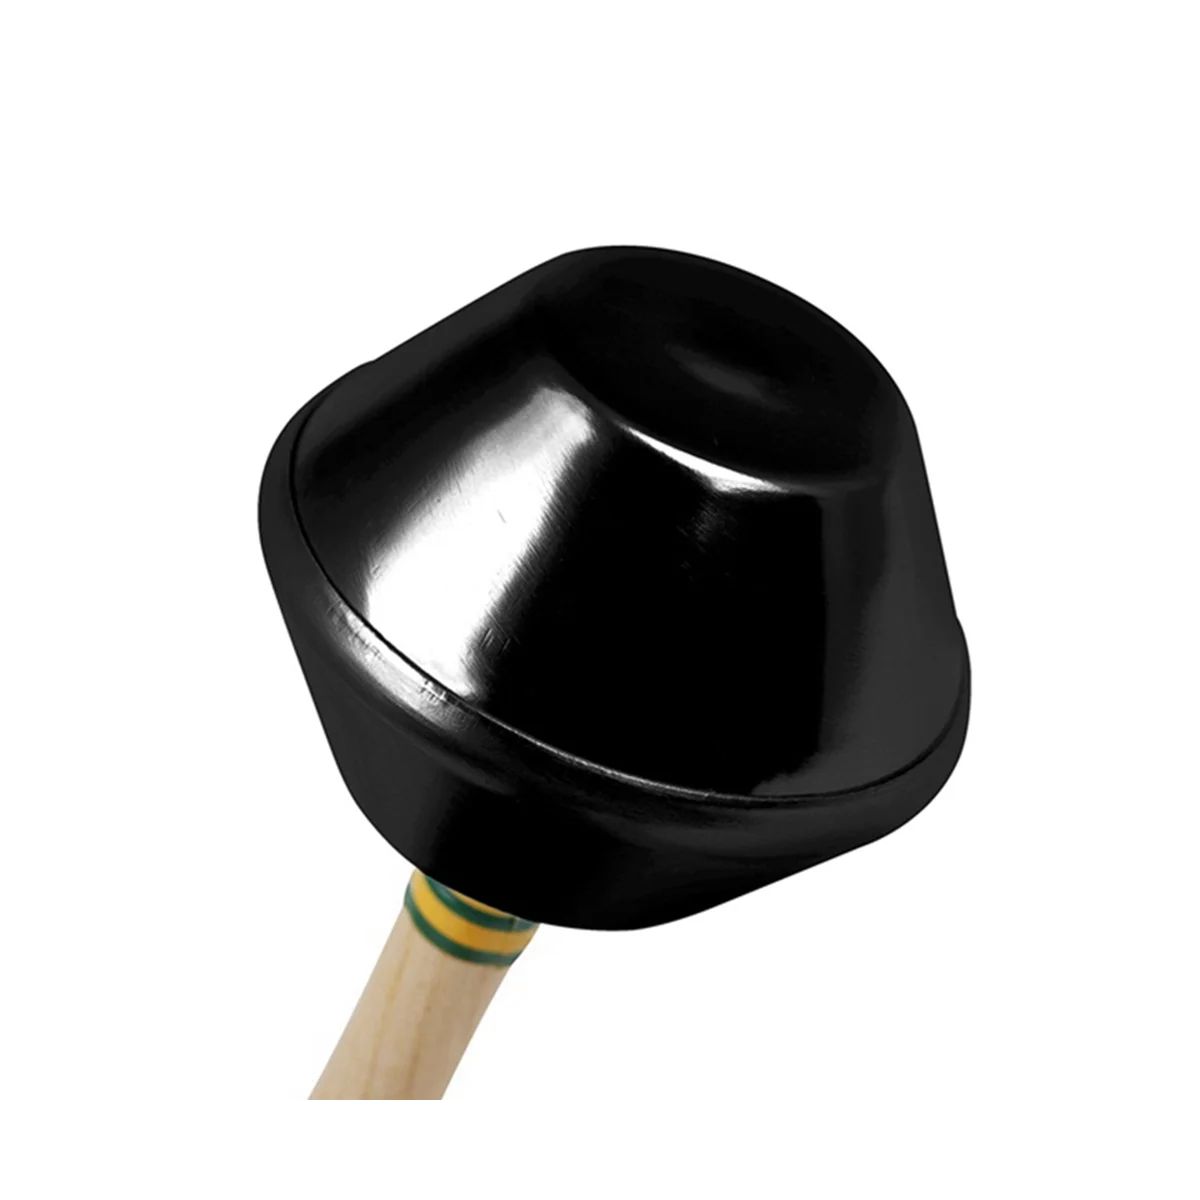 Orff Песочный Молоток Orff Музыкальный Ударный Инструмент Детские Игрушки-Погремушки Музыкальный Инструмент Игрушка, 1 Пара Черных Изображение 2